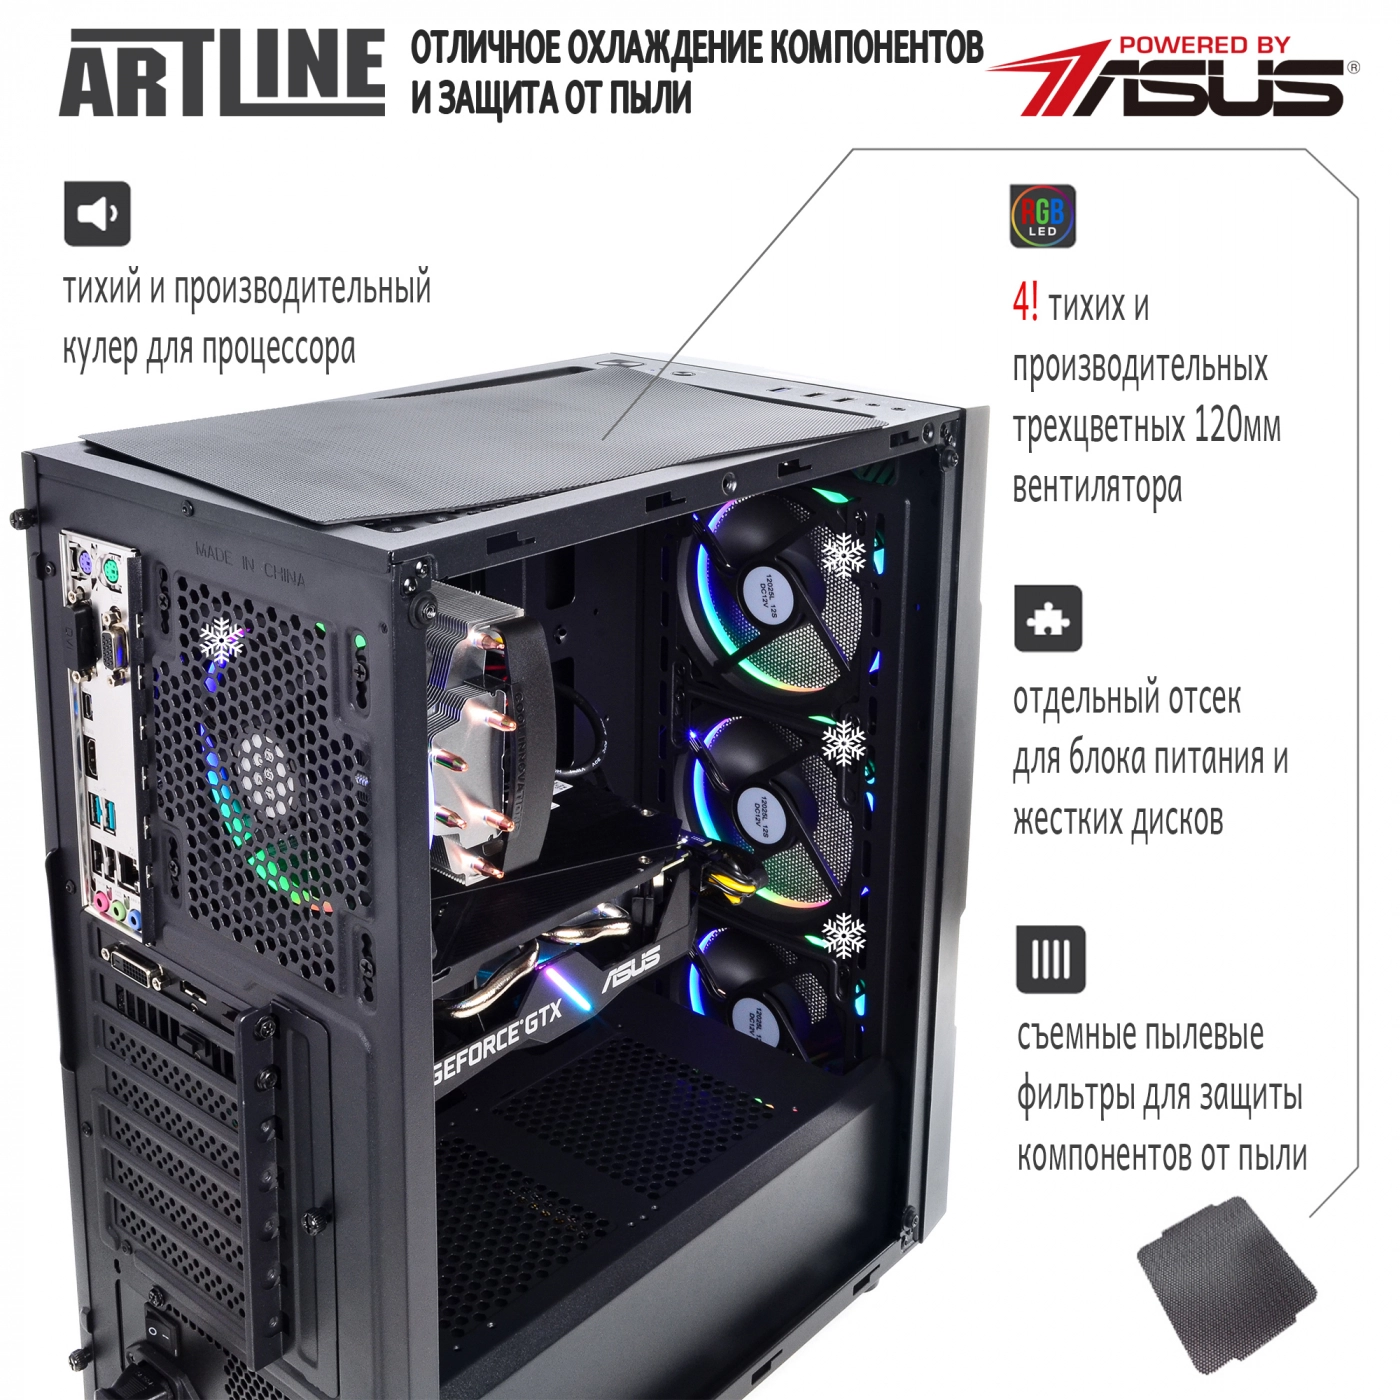 Купить Компьютер ARTLINE Gaming X45v26 - фото 2